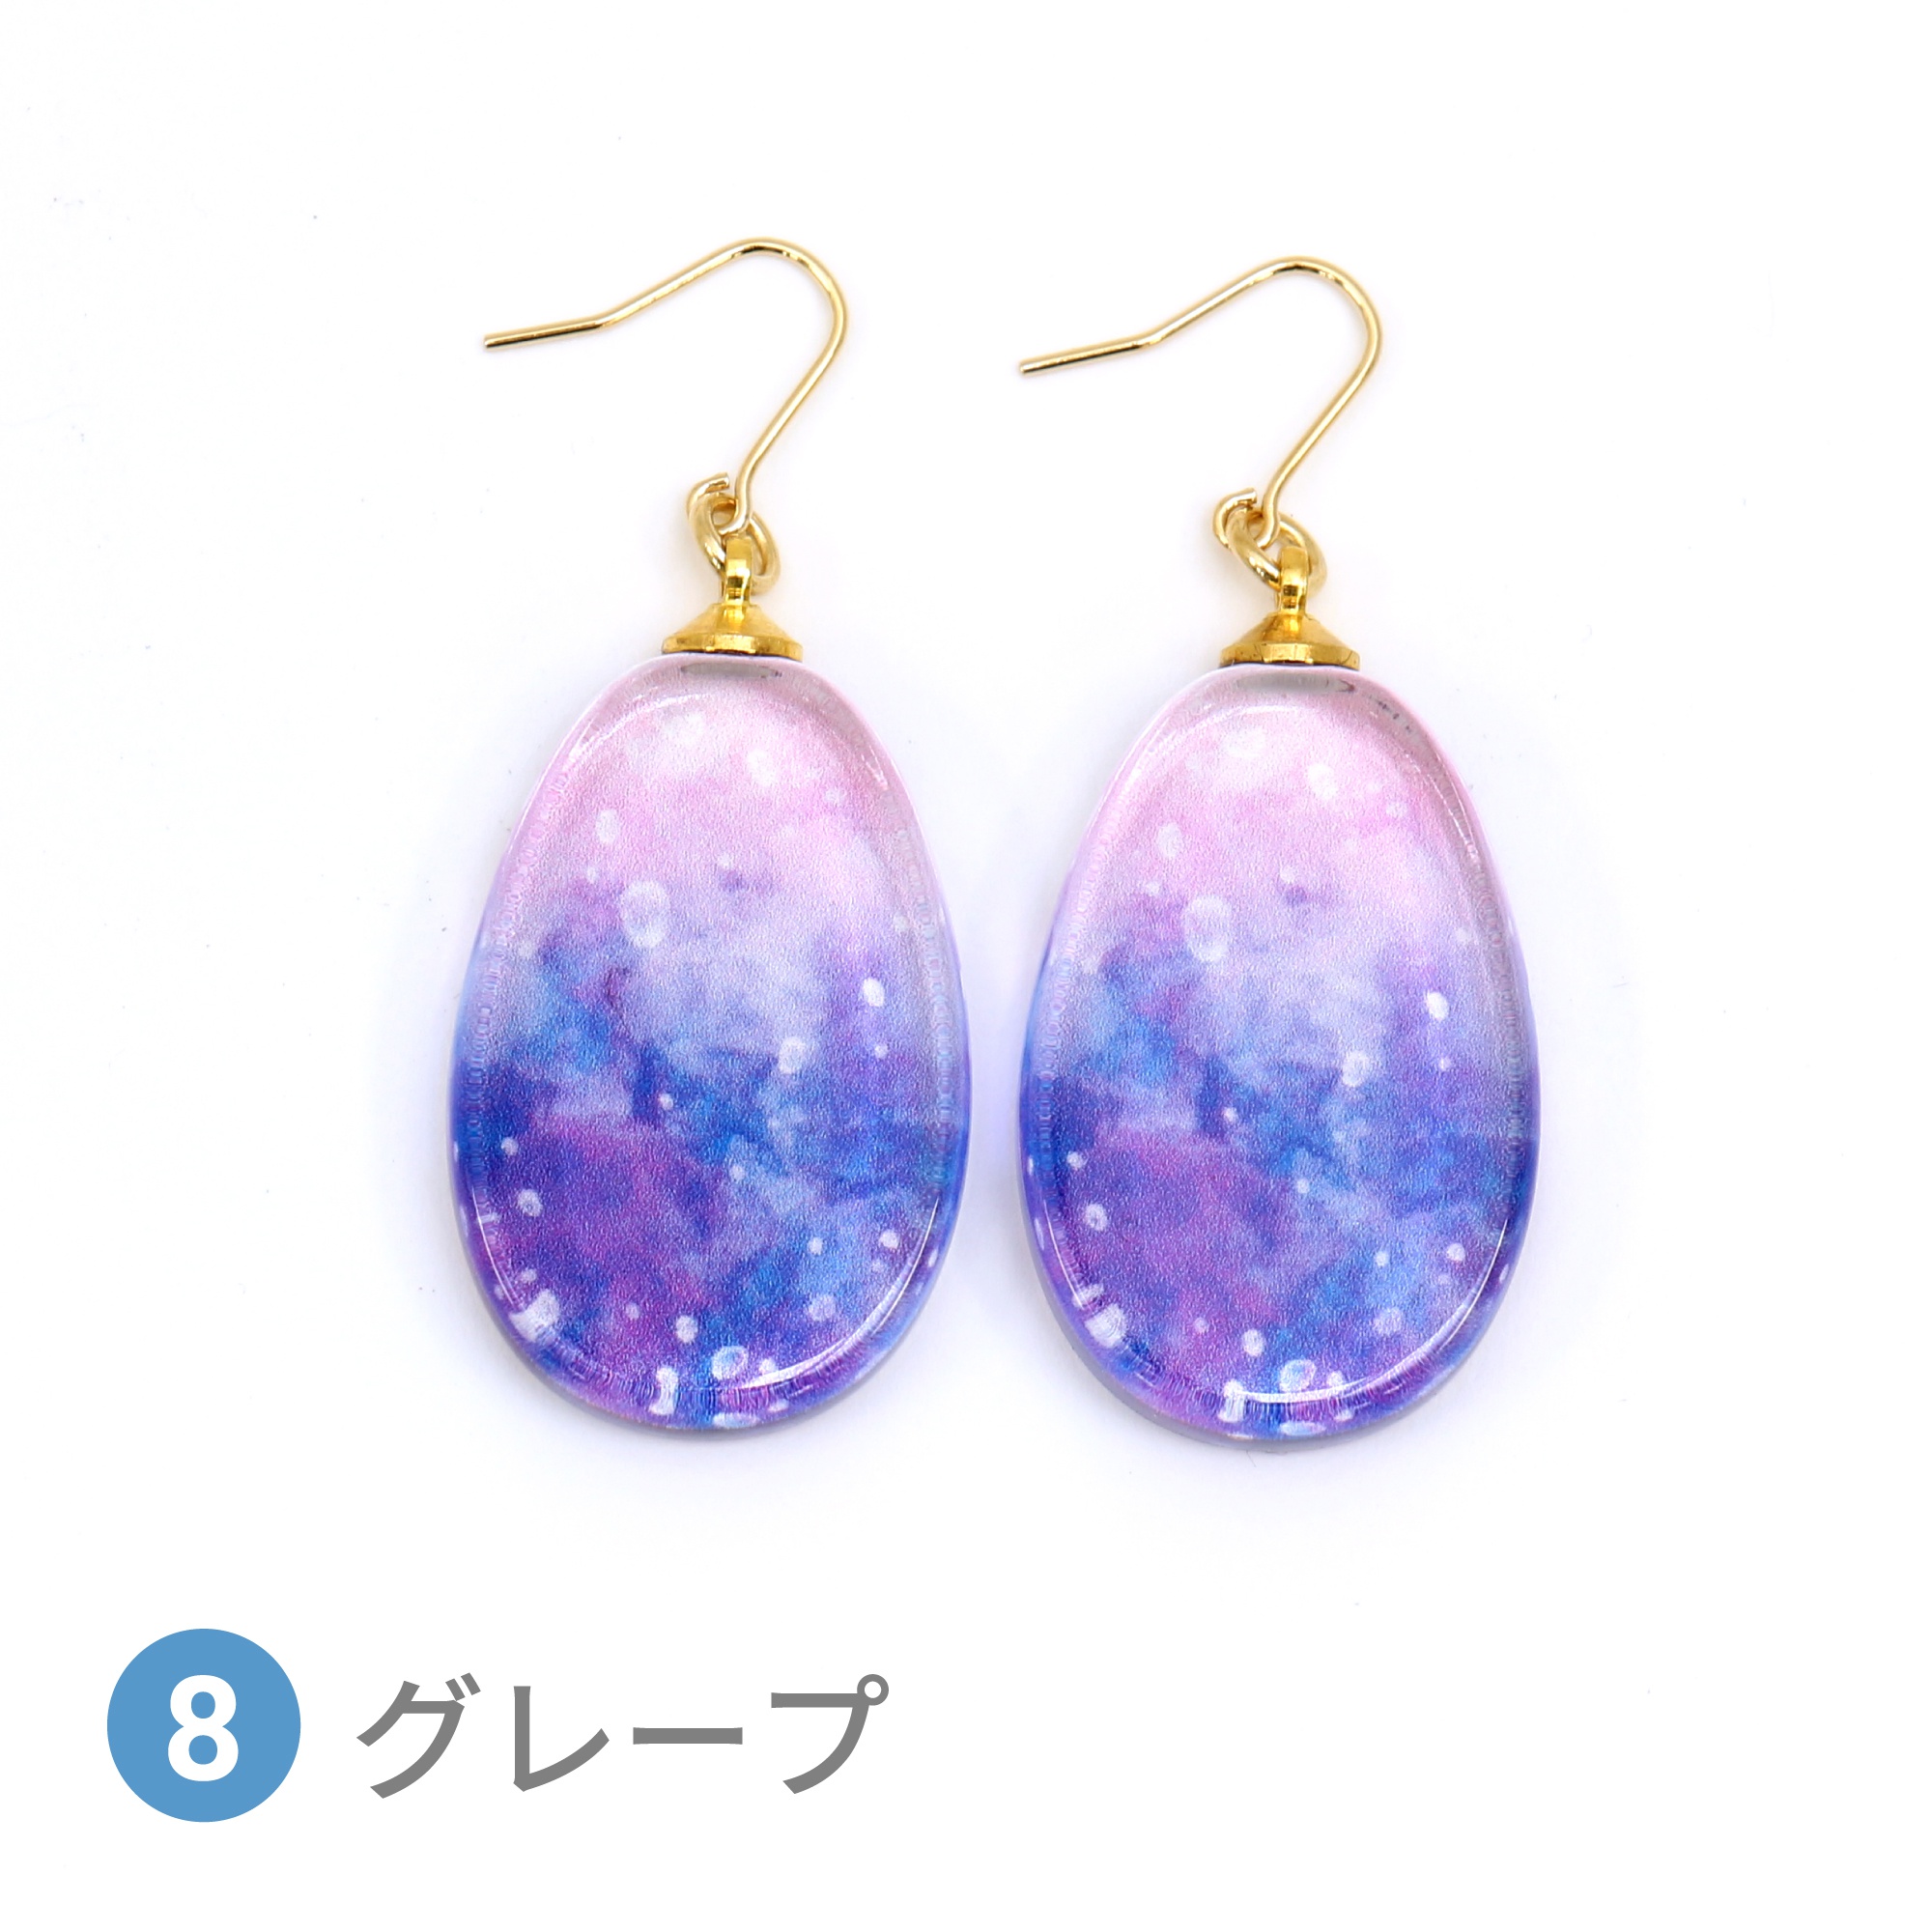 Glass accessories Pierced Earring SODA grape drop shape